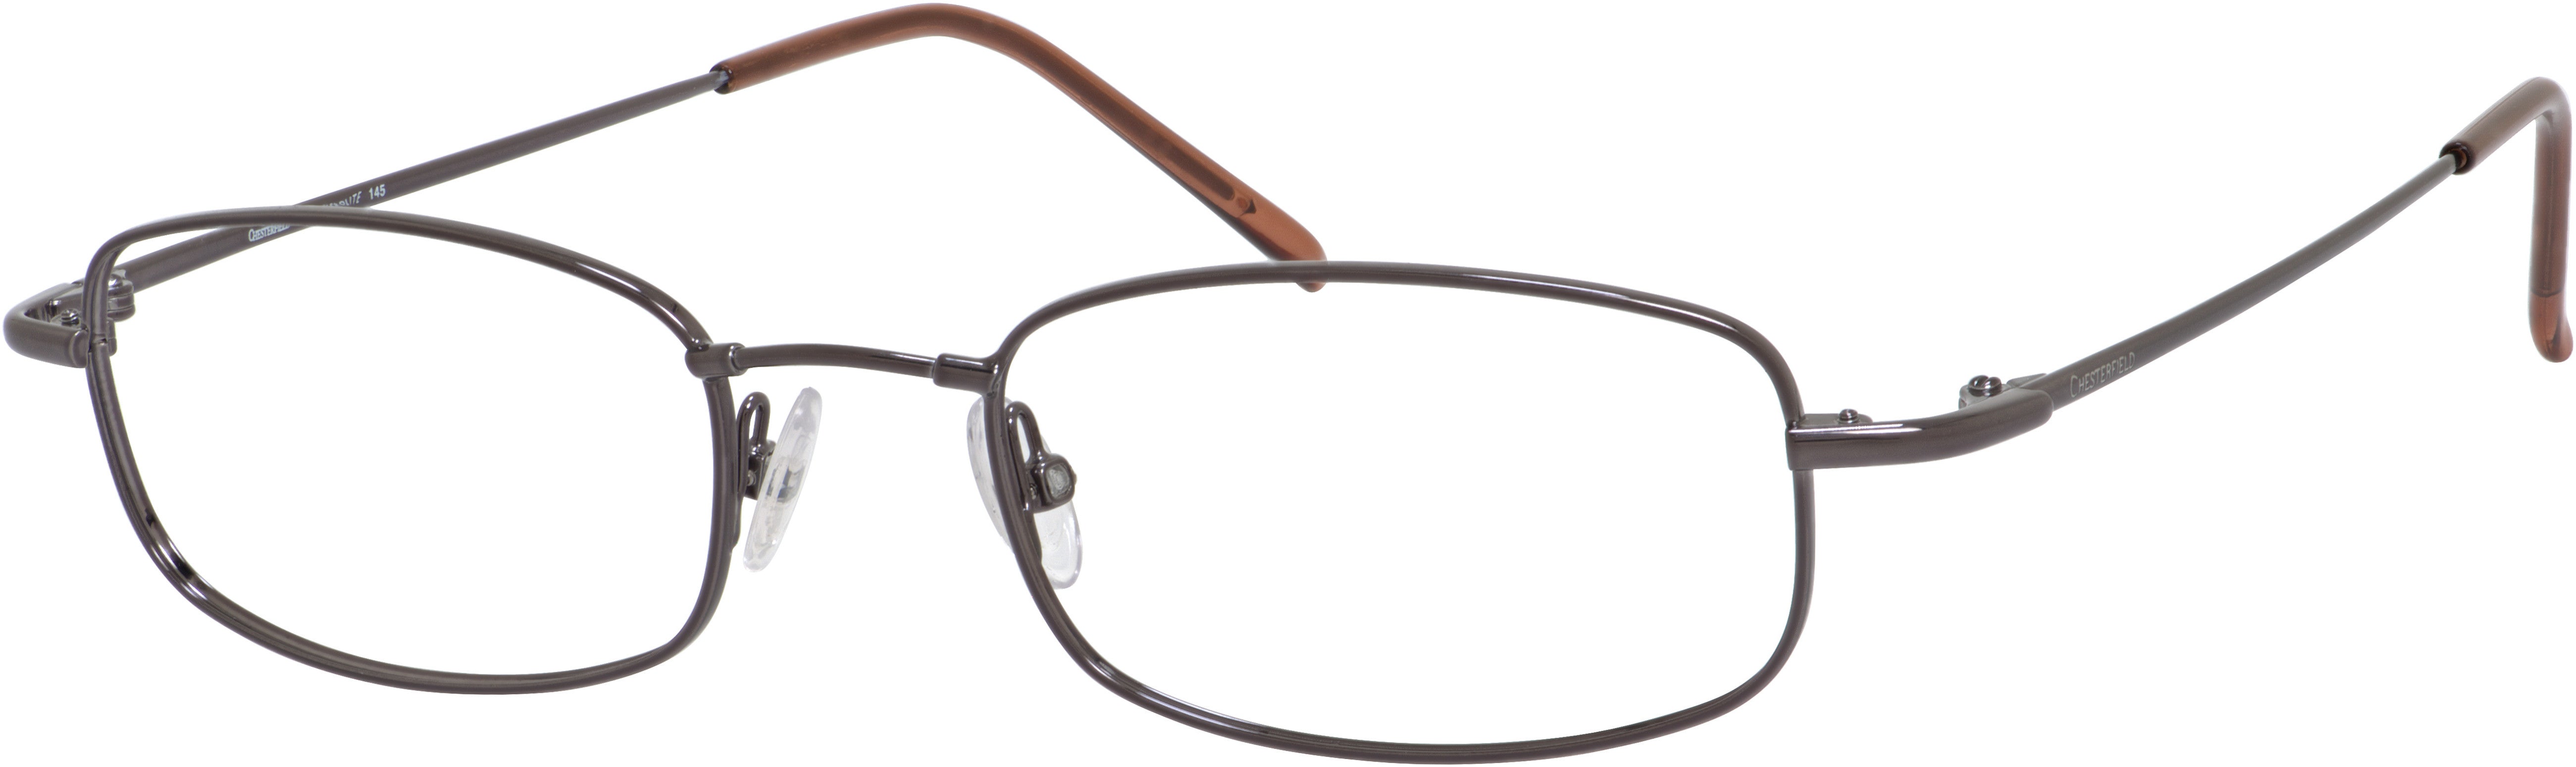  Chesterfield 681 Rectangular Eyeglasses 0TZ2-0TZ2  Gunmetal (00 Demo Lens)